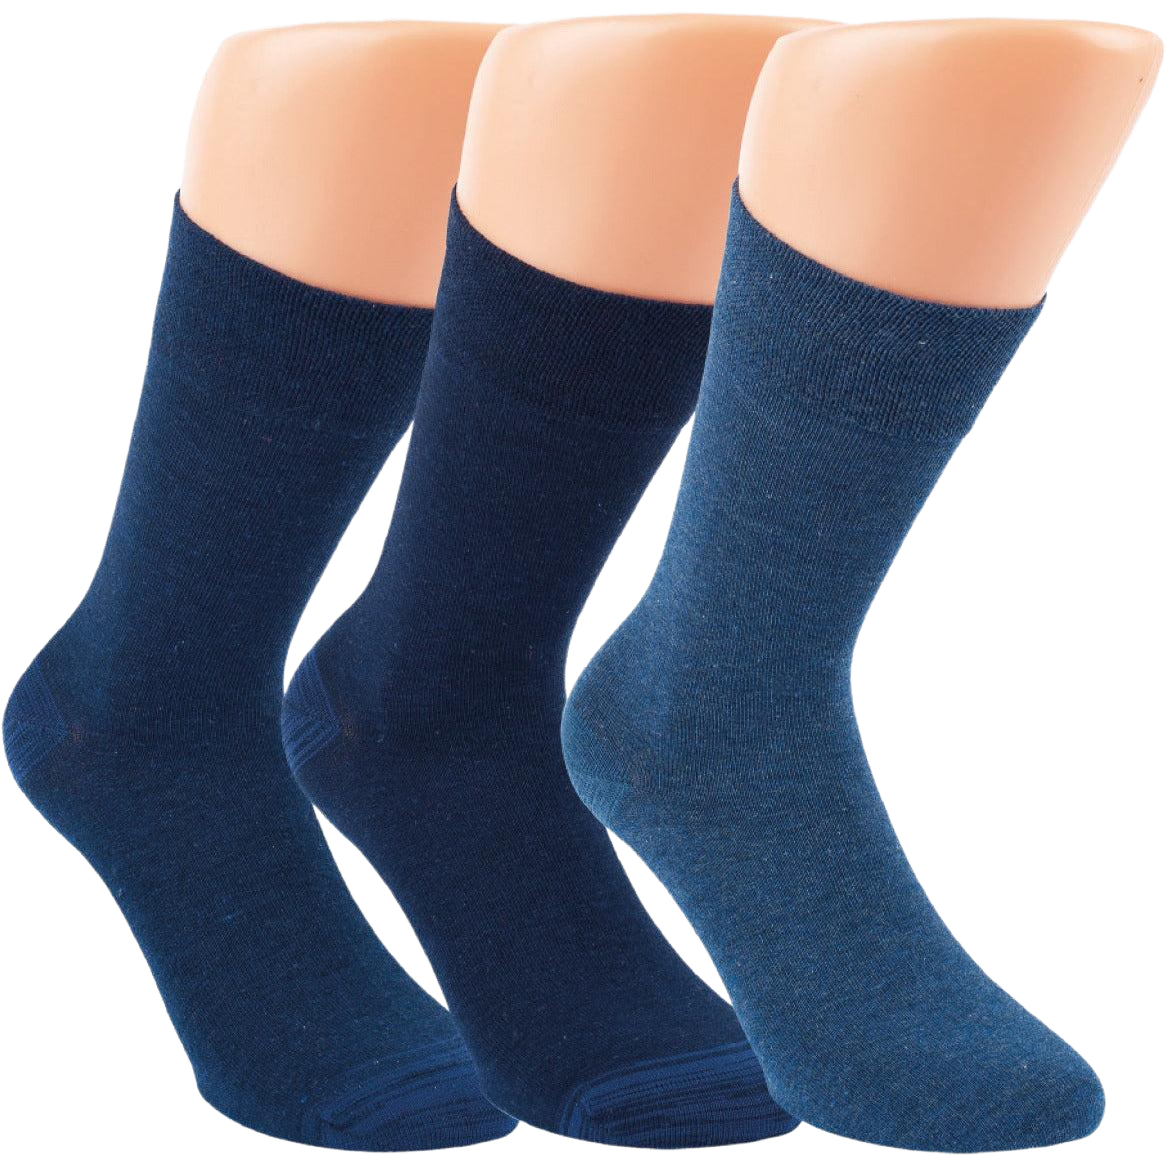 Bambussocken in der Farbe Blau und in halblanger Ausführung. Die Socken sind dünn ausgebildet und super für den Sommer geeignet.